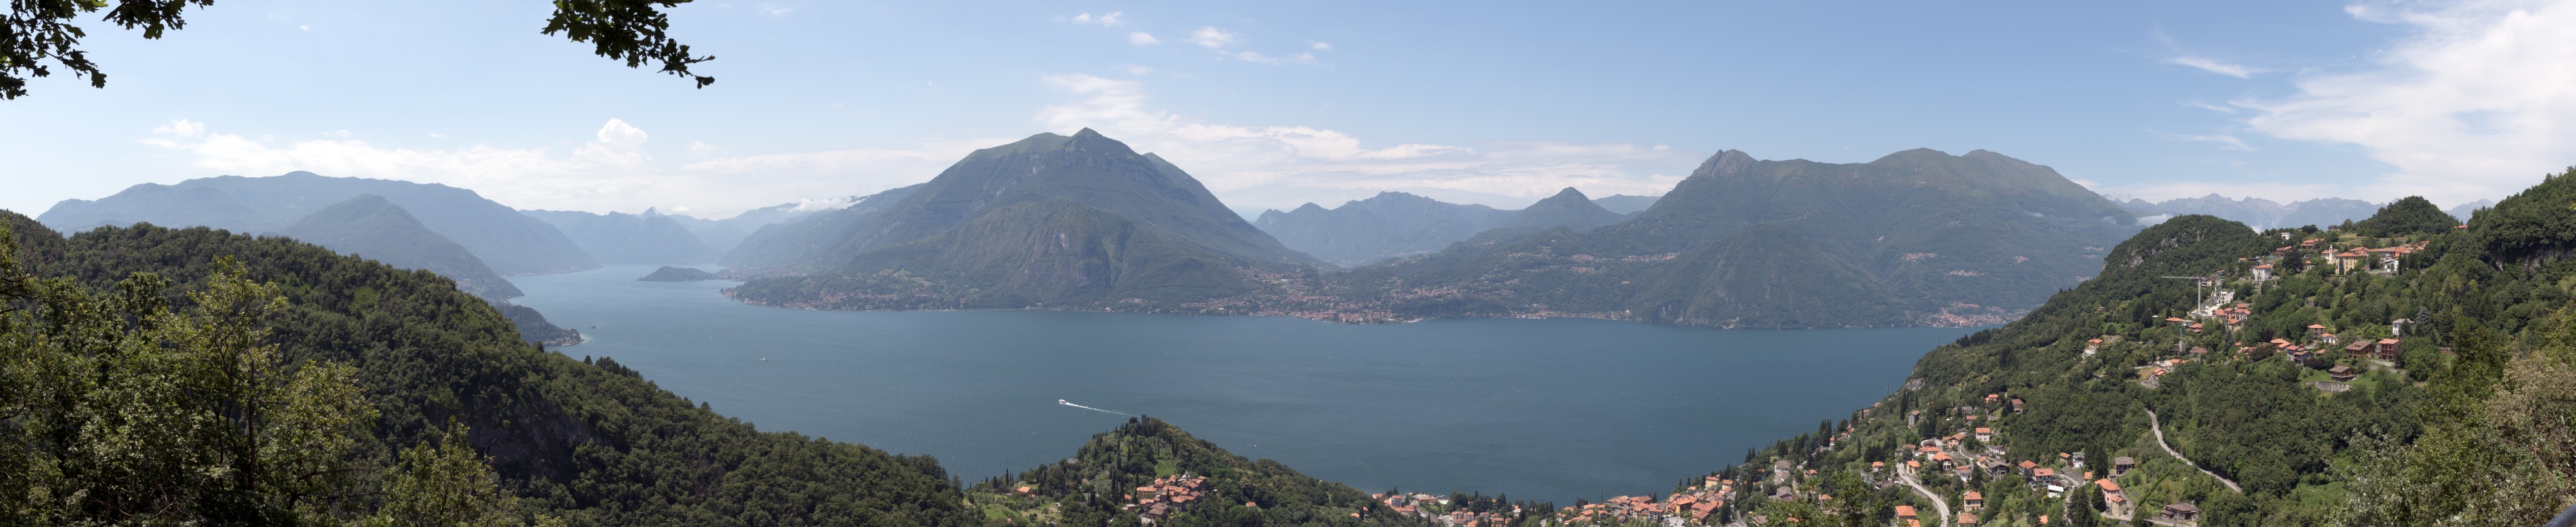 Lago di Como 2016-06-25 pano Perledo Vezio